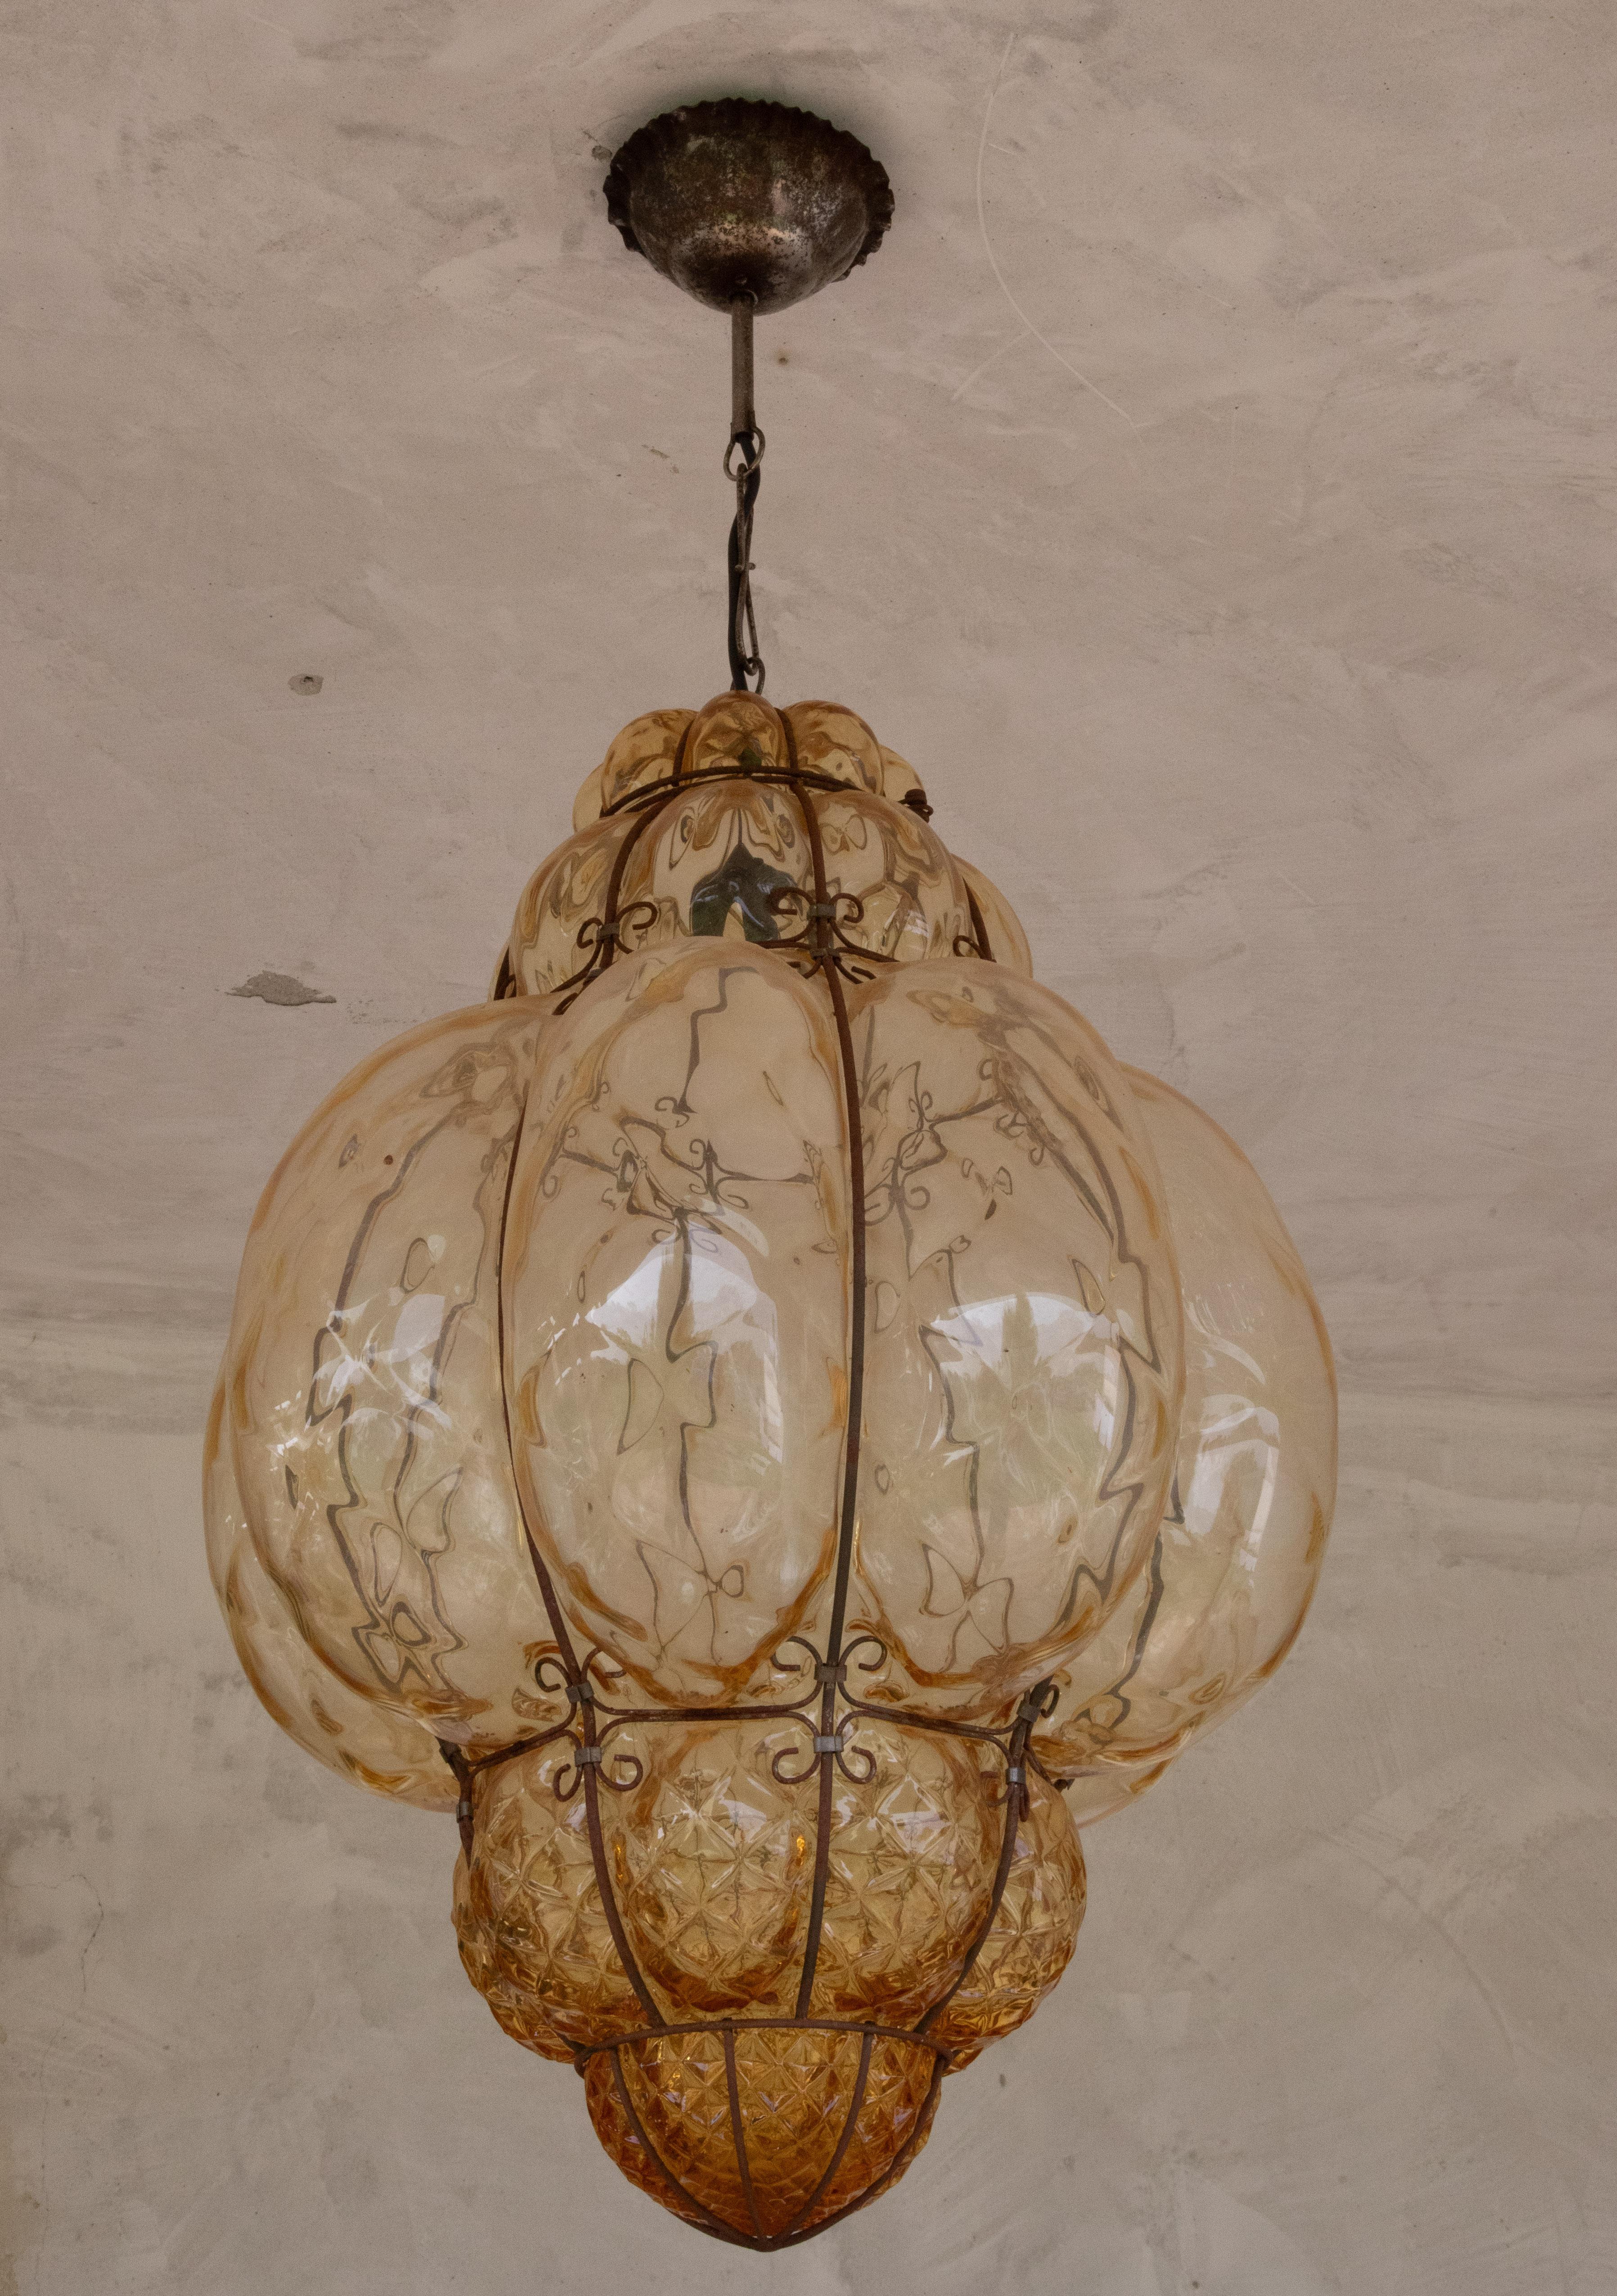 Außergewöhnliches Stück aus Murano-Glas, typisches Beispiel für die berühmte venezianische Glashütte. Dieses Paar venezianischer Laternen ist einzigartig und aufgrund seiner Größe äußerst selten. Maße: Gesamthöhe 95 cm mit Kette, Verlängerung